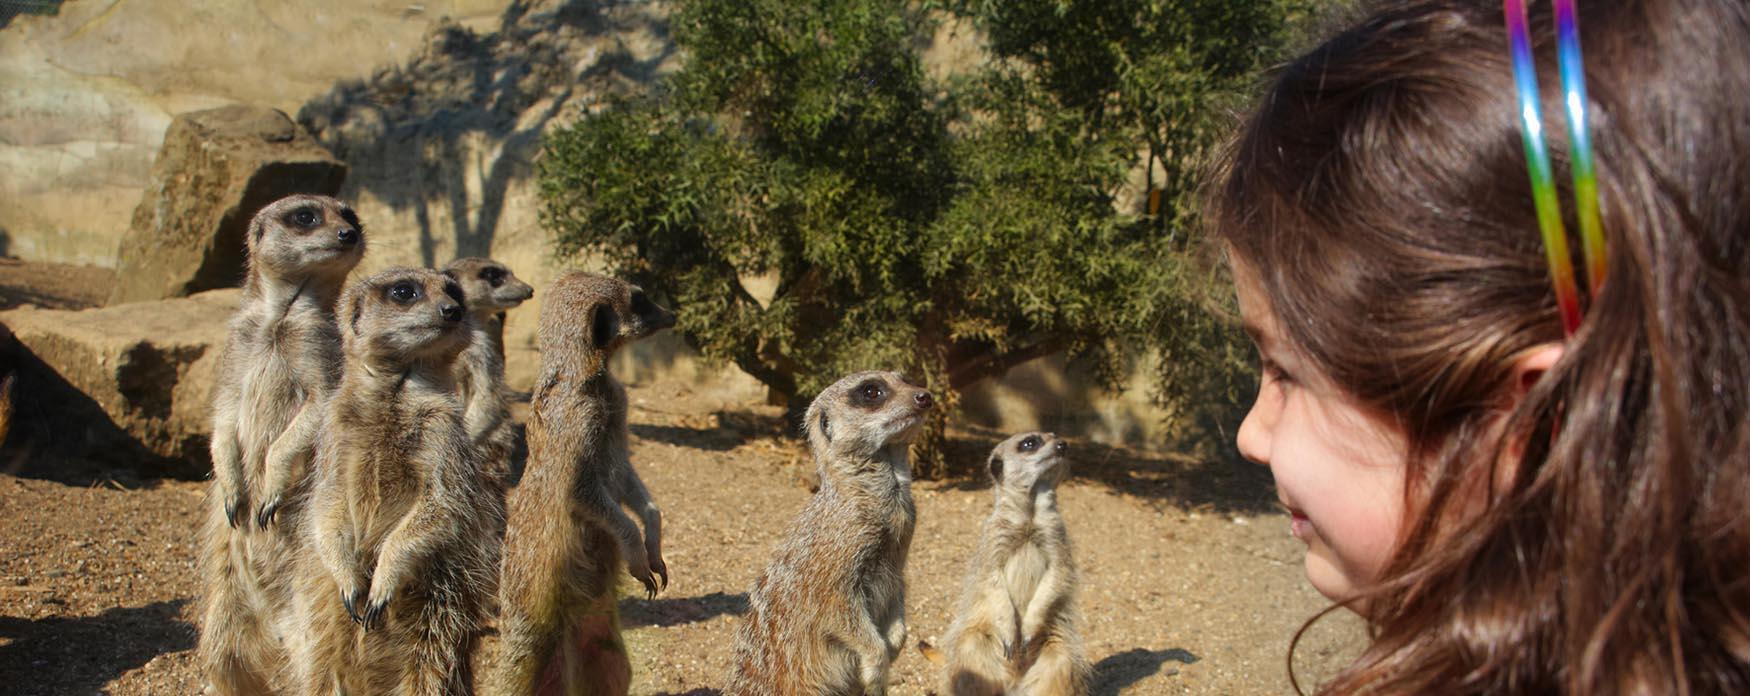 Les suricates du zoo de Drusillas près d’Eastbourne